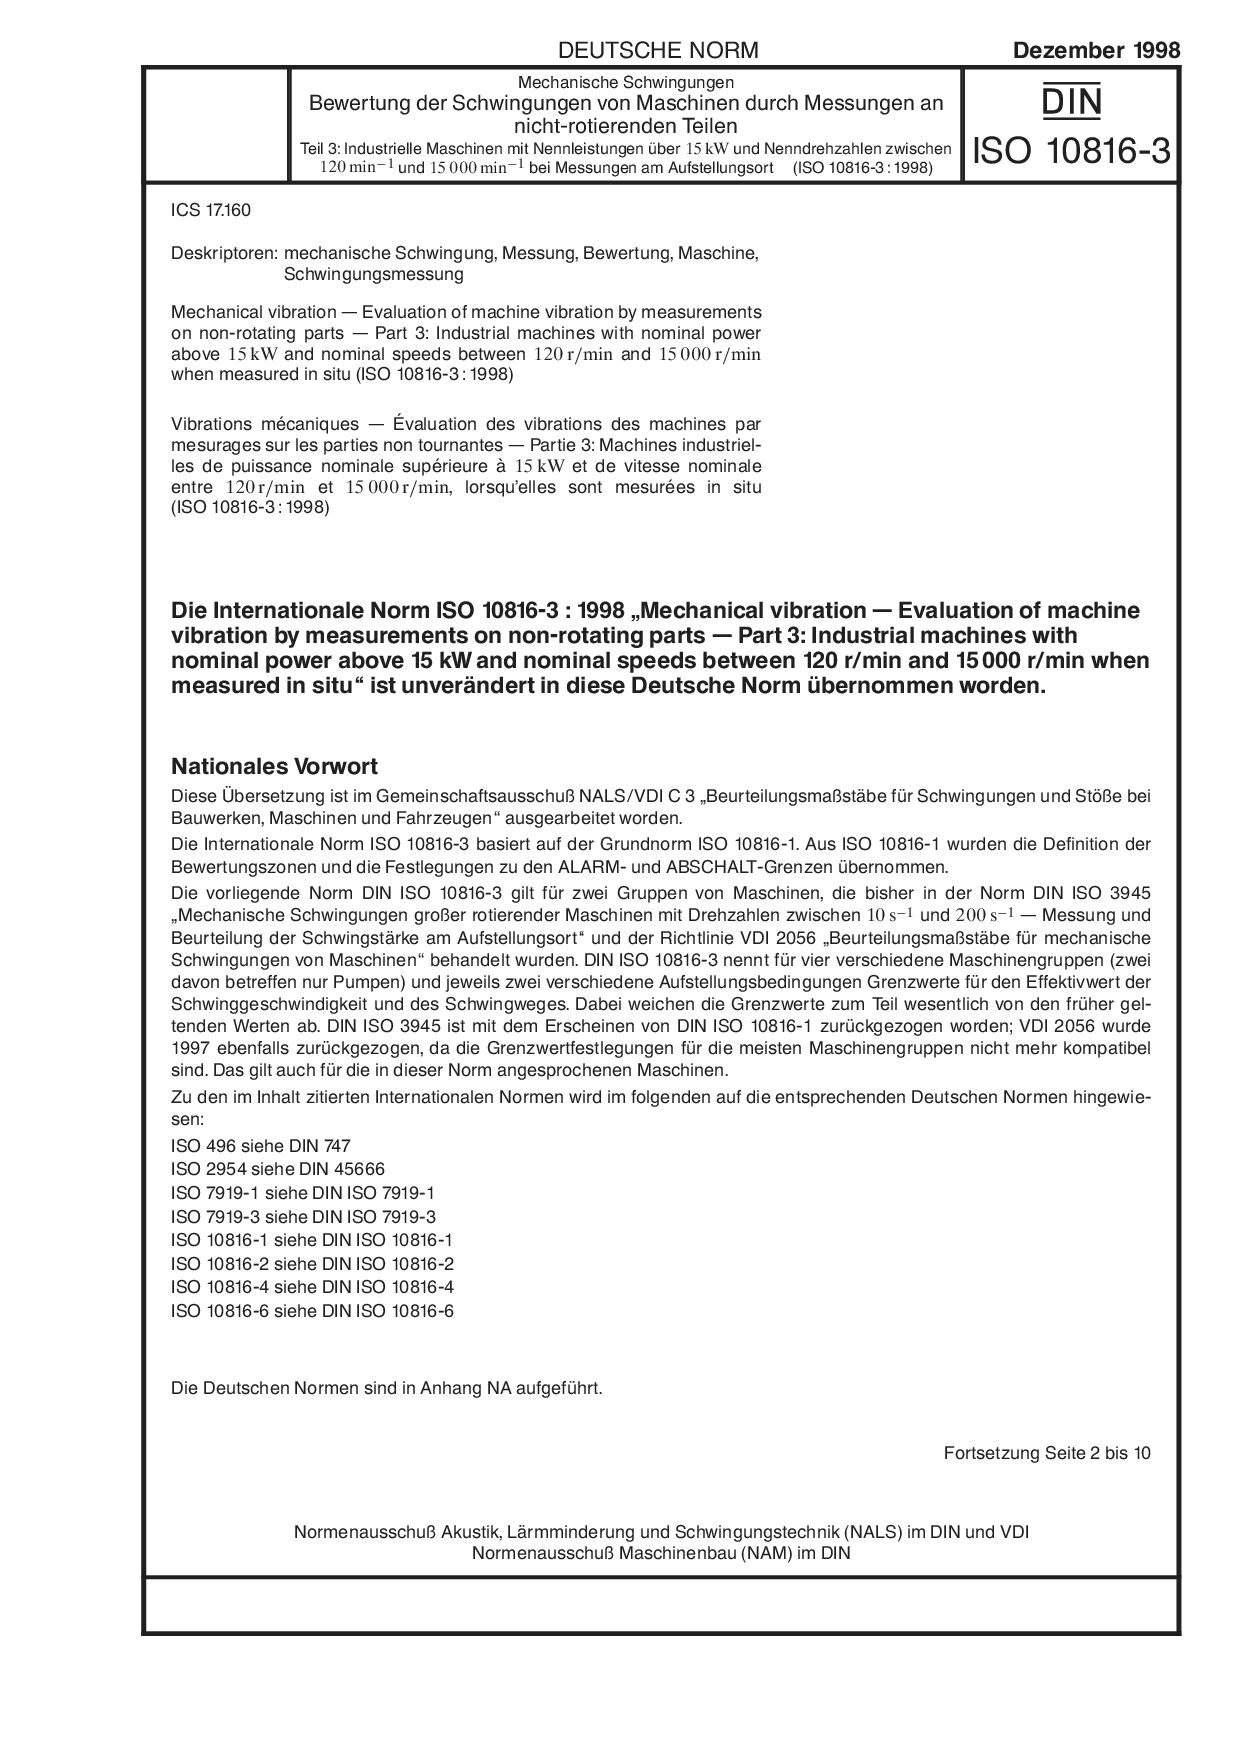 DIN ISO 10816-3:1998-12封面图